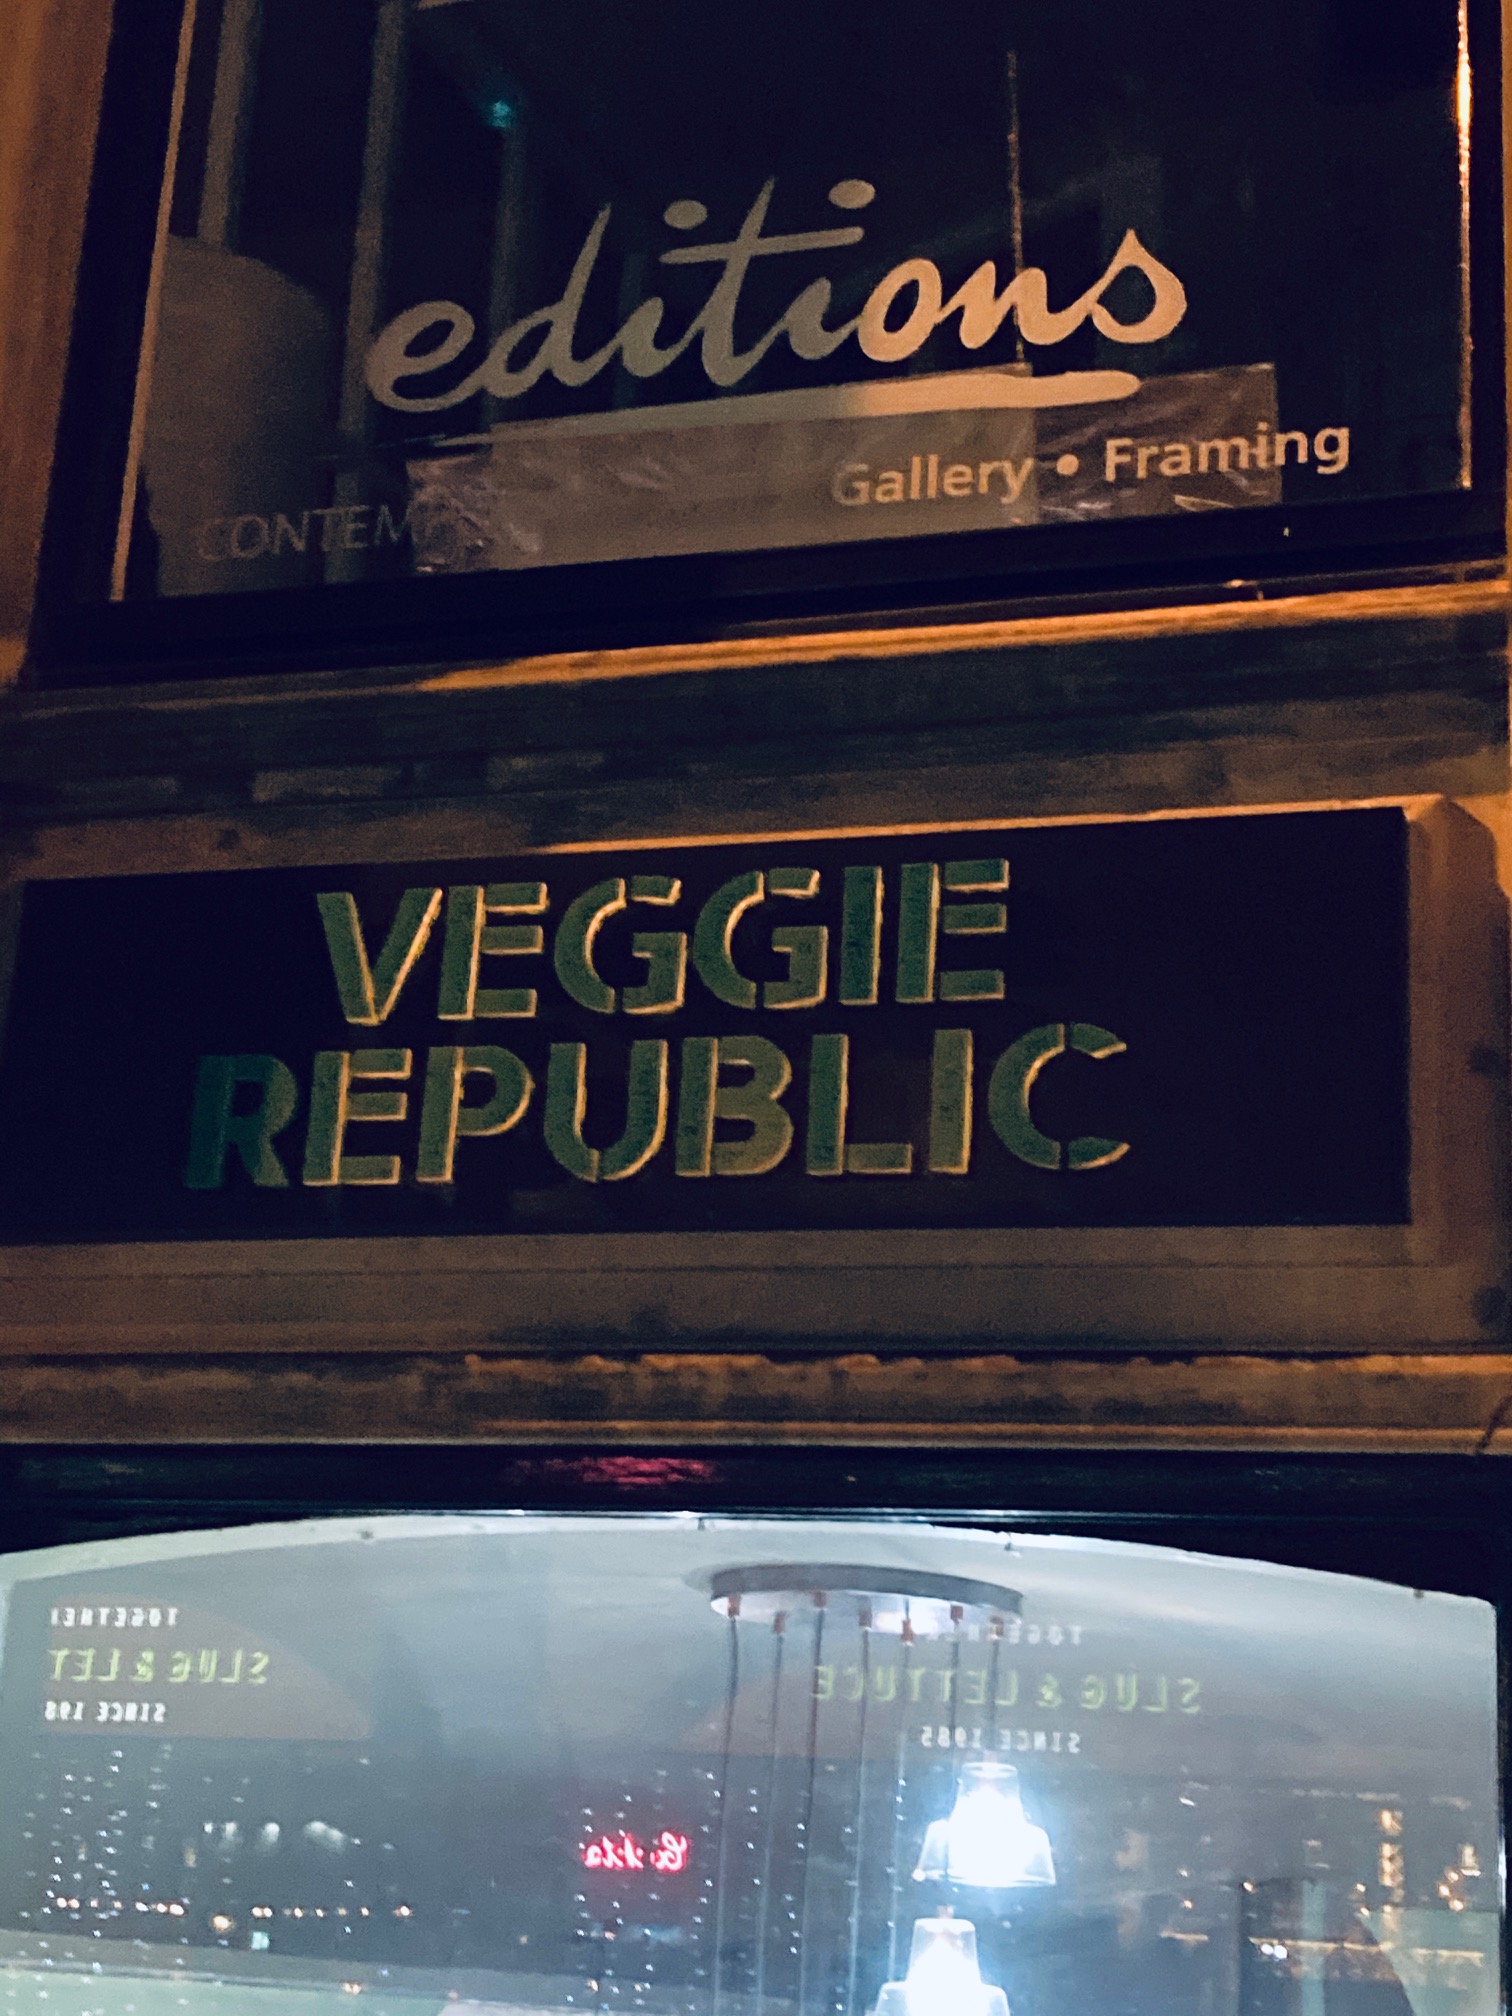 Veggie Republic